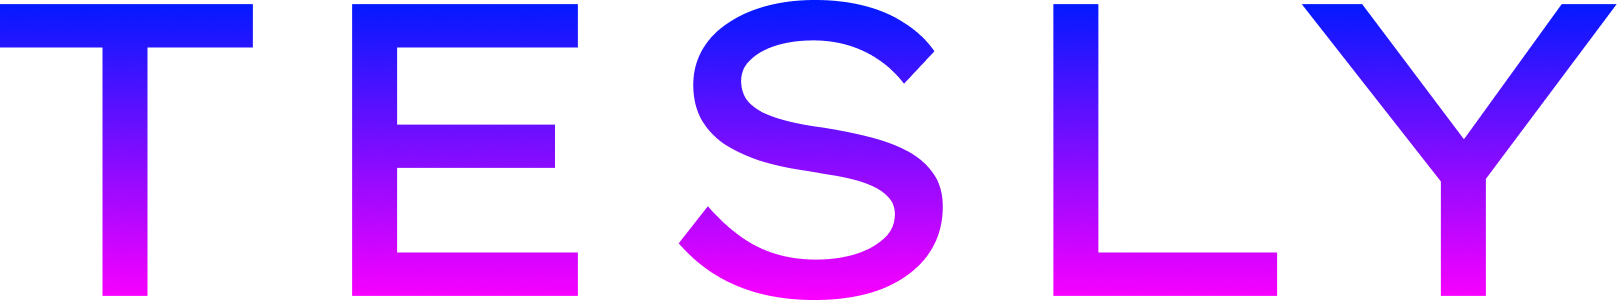 TESLY logo